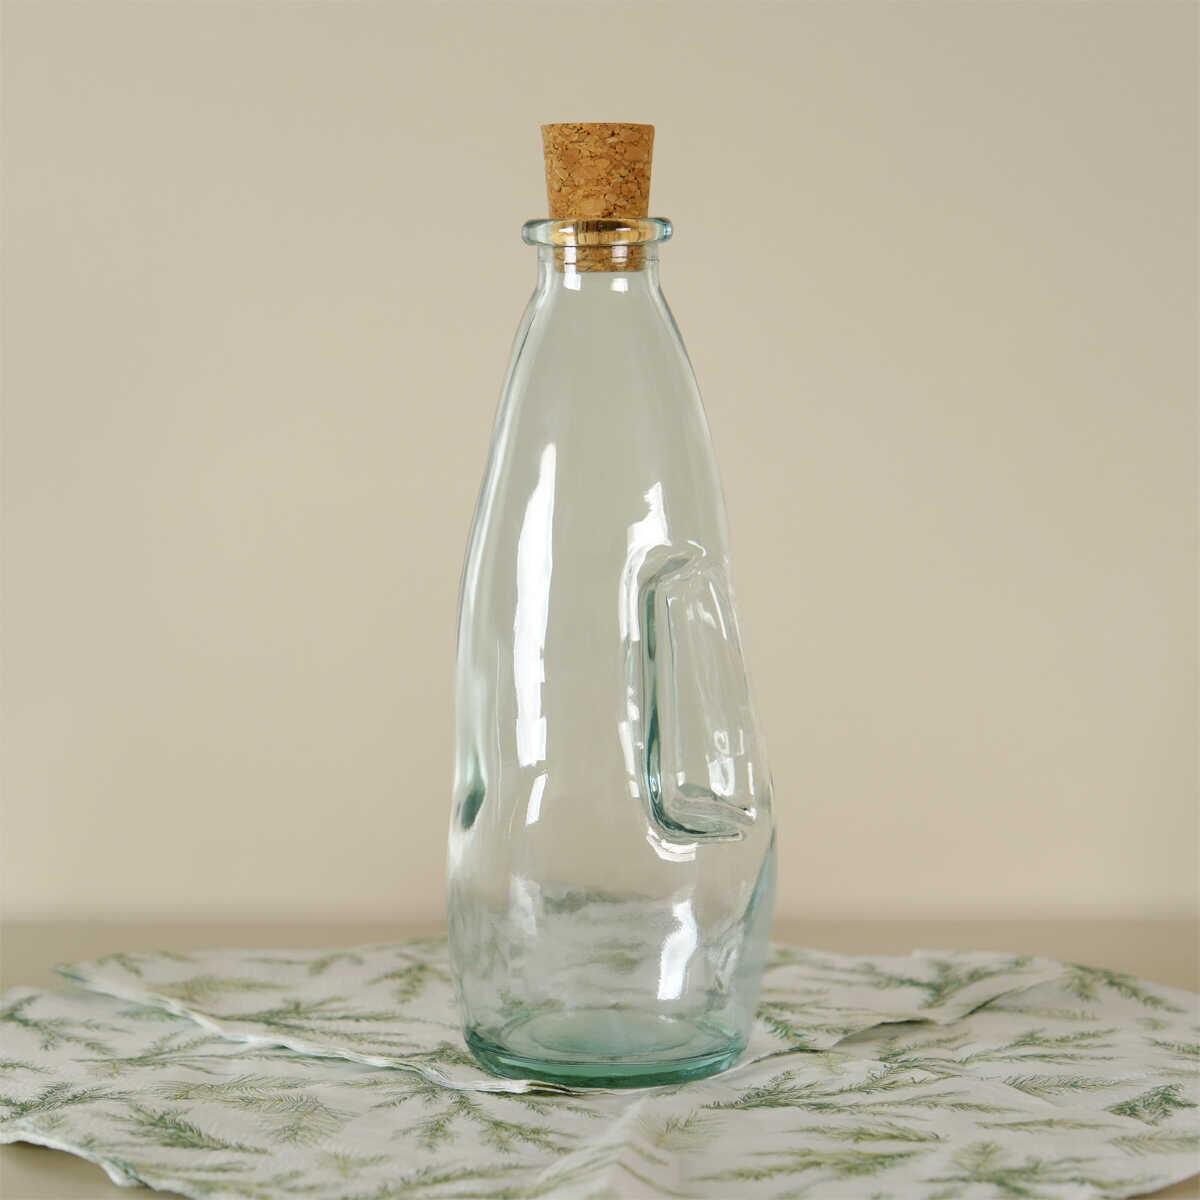 Sanmiguel Oil Vinegar Bottle 300 cc 2